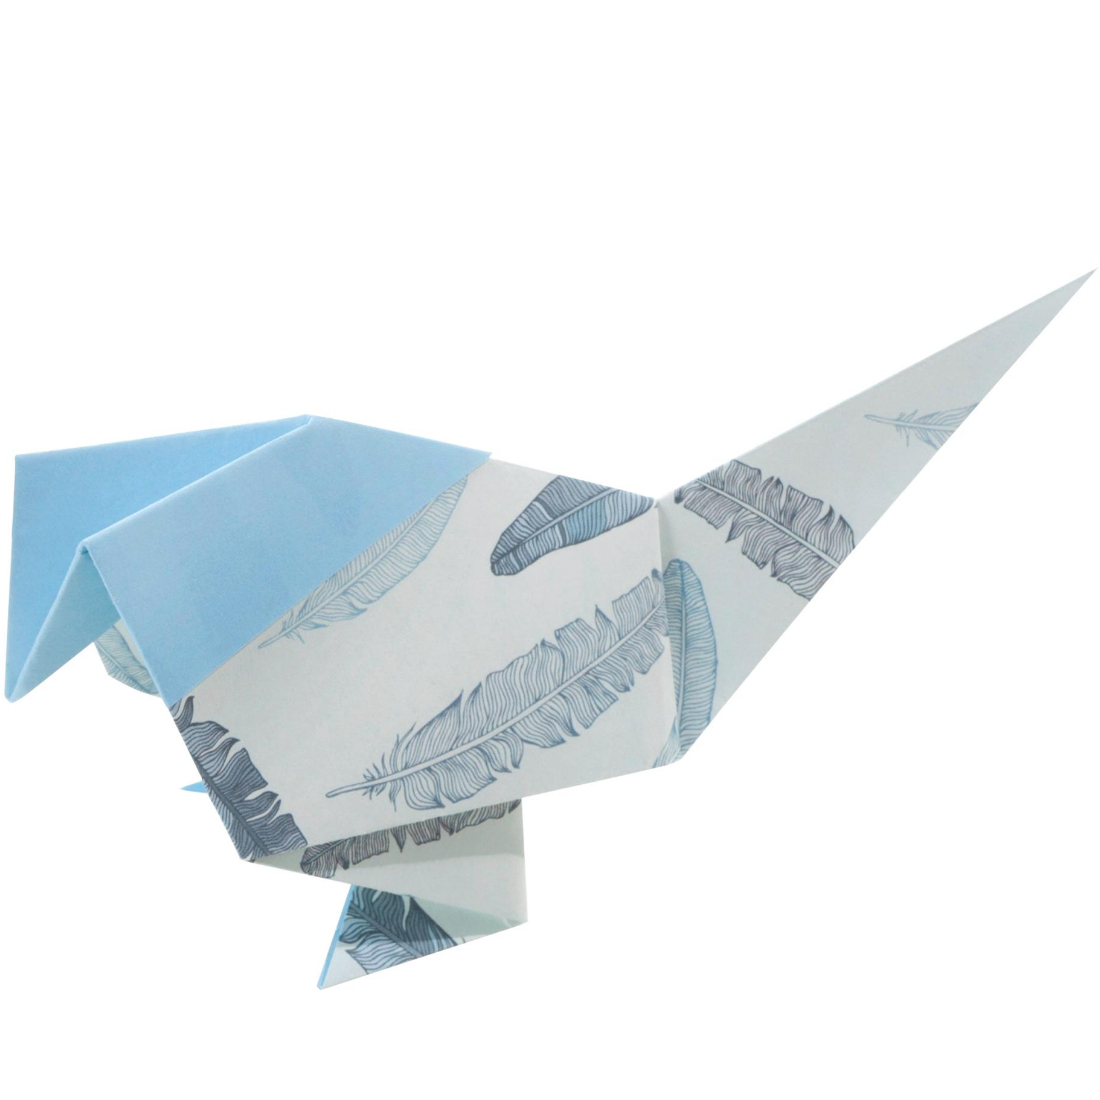 Papel Origami Motivo Nostalgia folia